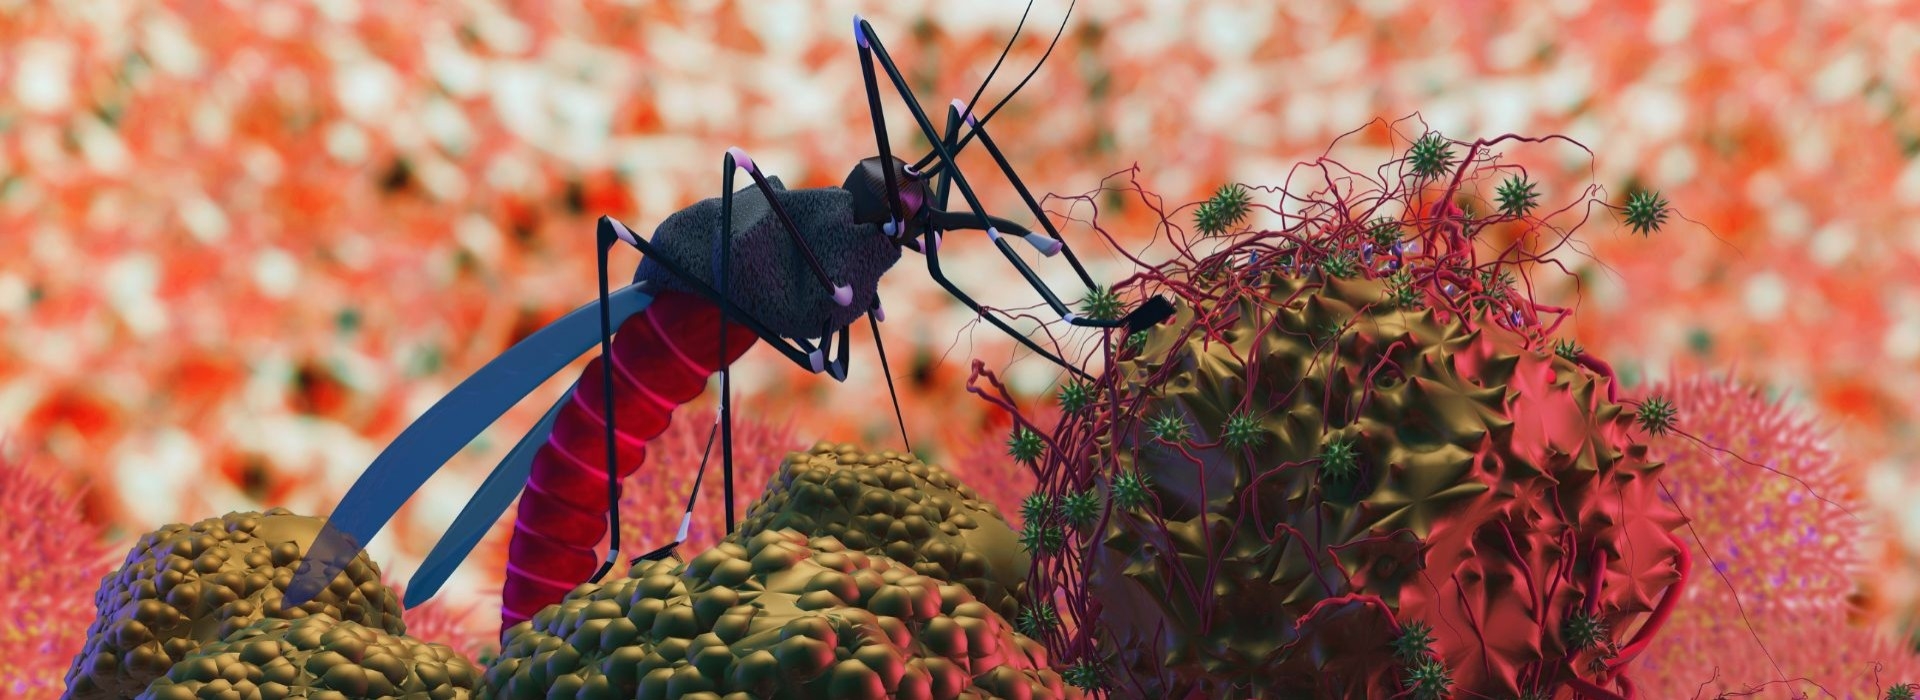 Jak zmiany klimatu wpływają na świat owadów?